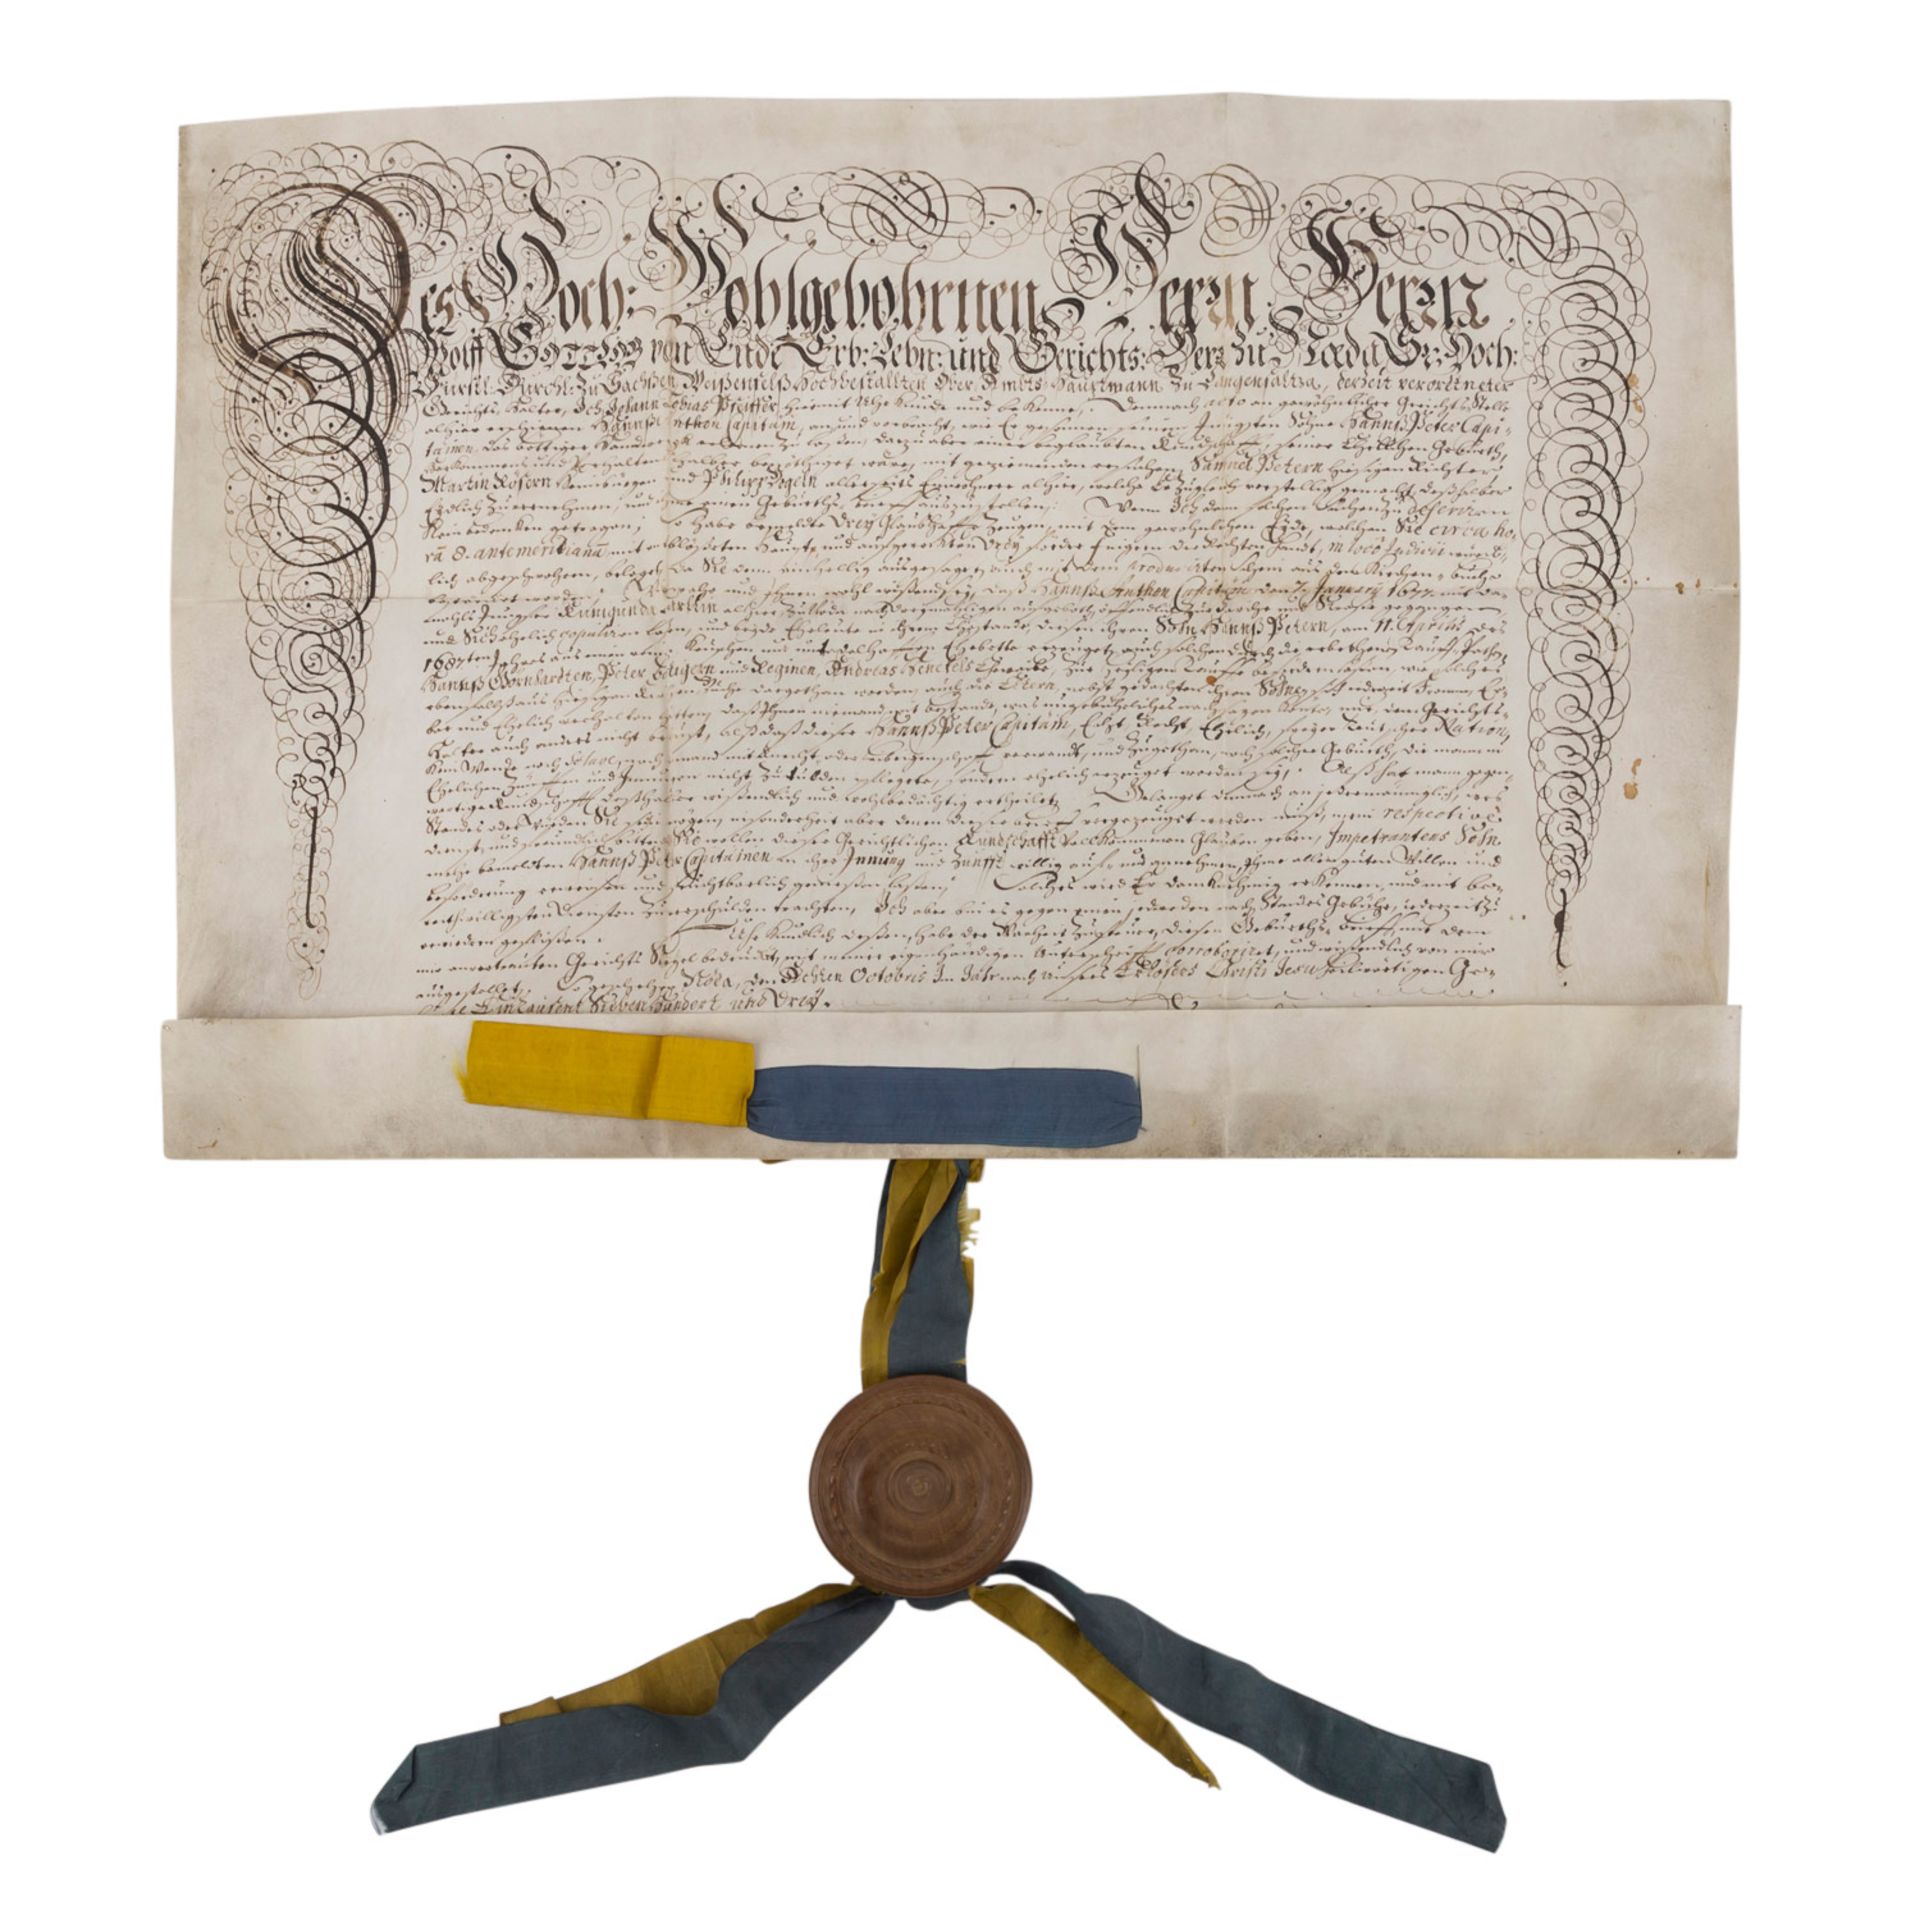 Urkunde von 1703 mit Obstbaumholz-Siegelkapselmit blau-gelben Bändern verziert (Farben Sachsen